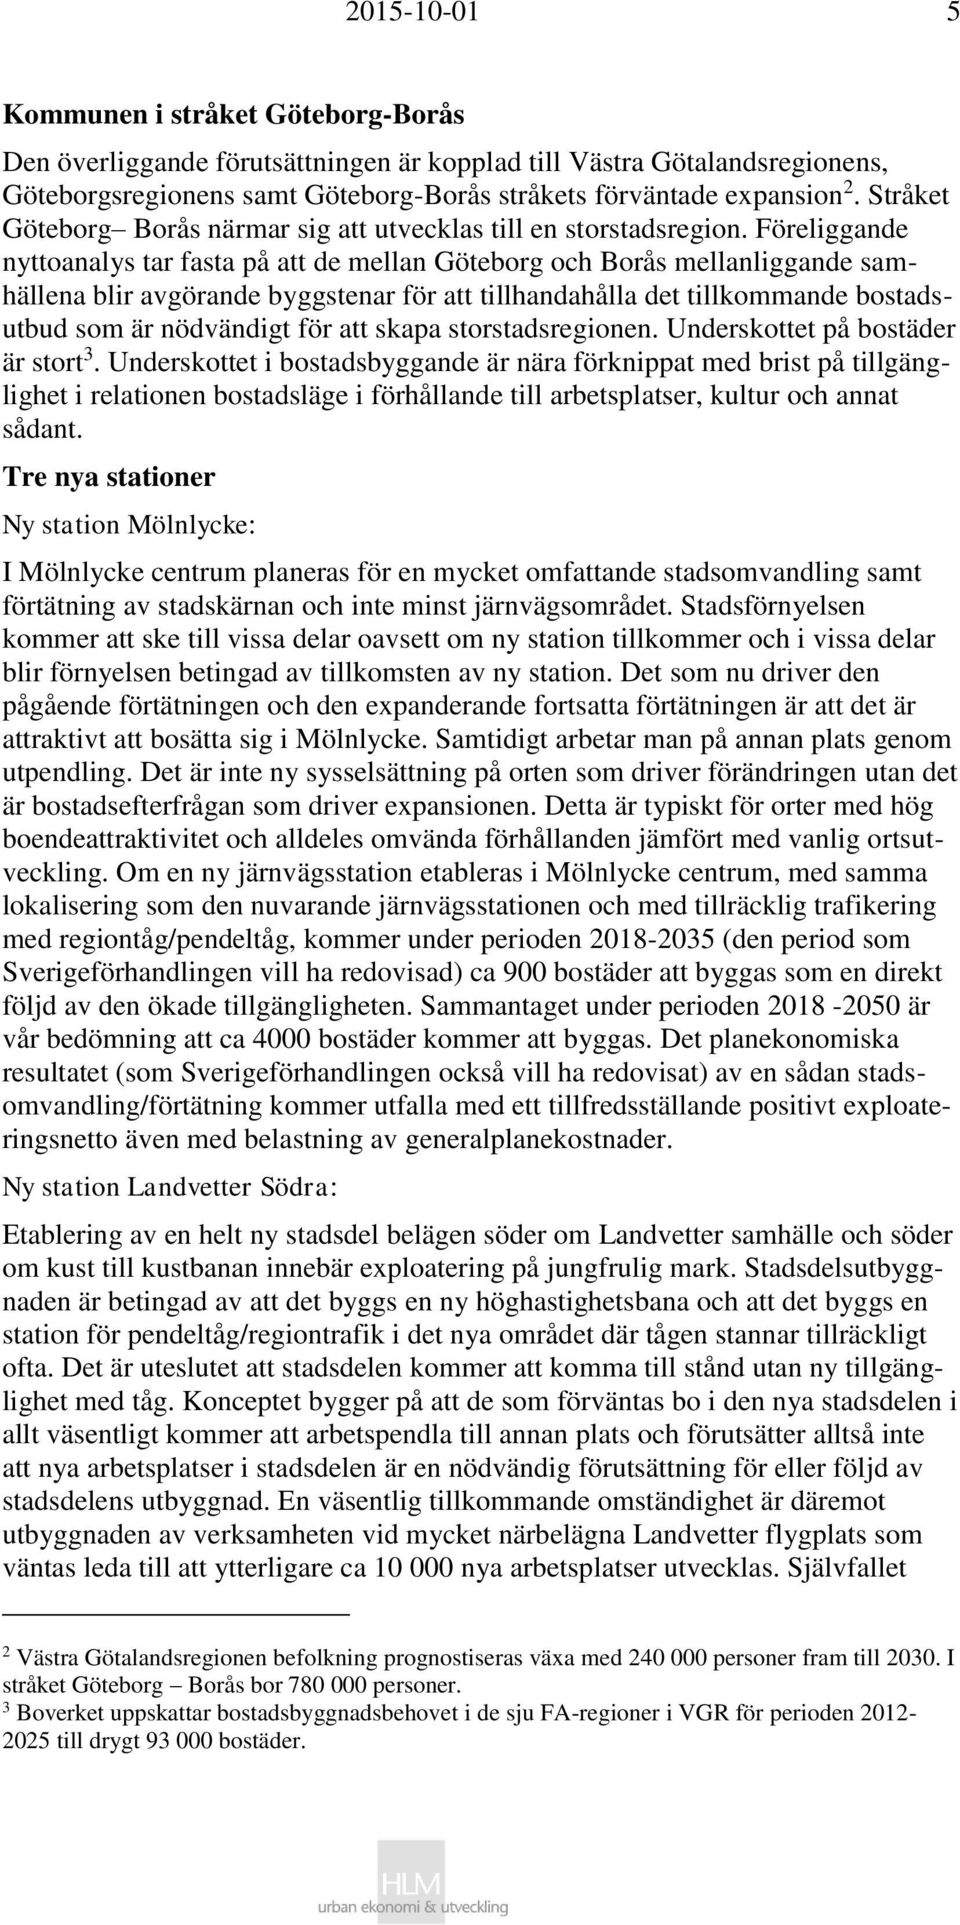 Föreliggande nyttoanalys tar fasta på att de mellan Göteborg och Borås mellanliggande samhällena blir avgörande byggstenar för att tillhandahålla det tillkommande bostadsutbud som är nödvändigt för